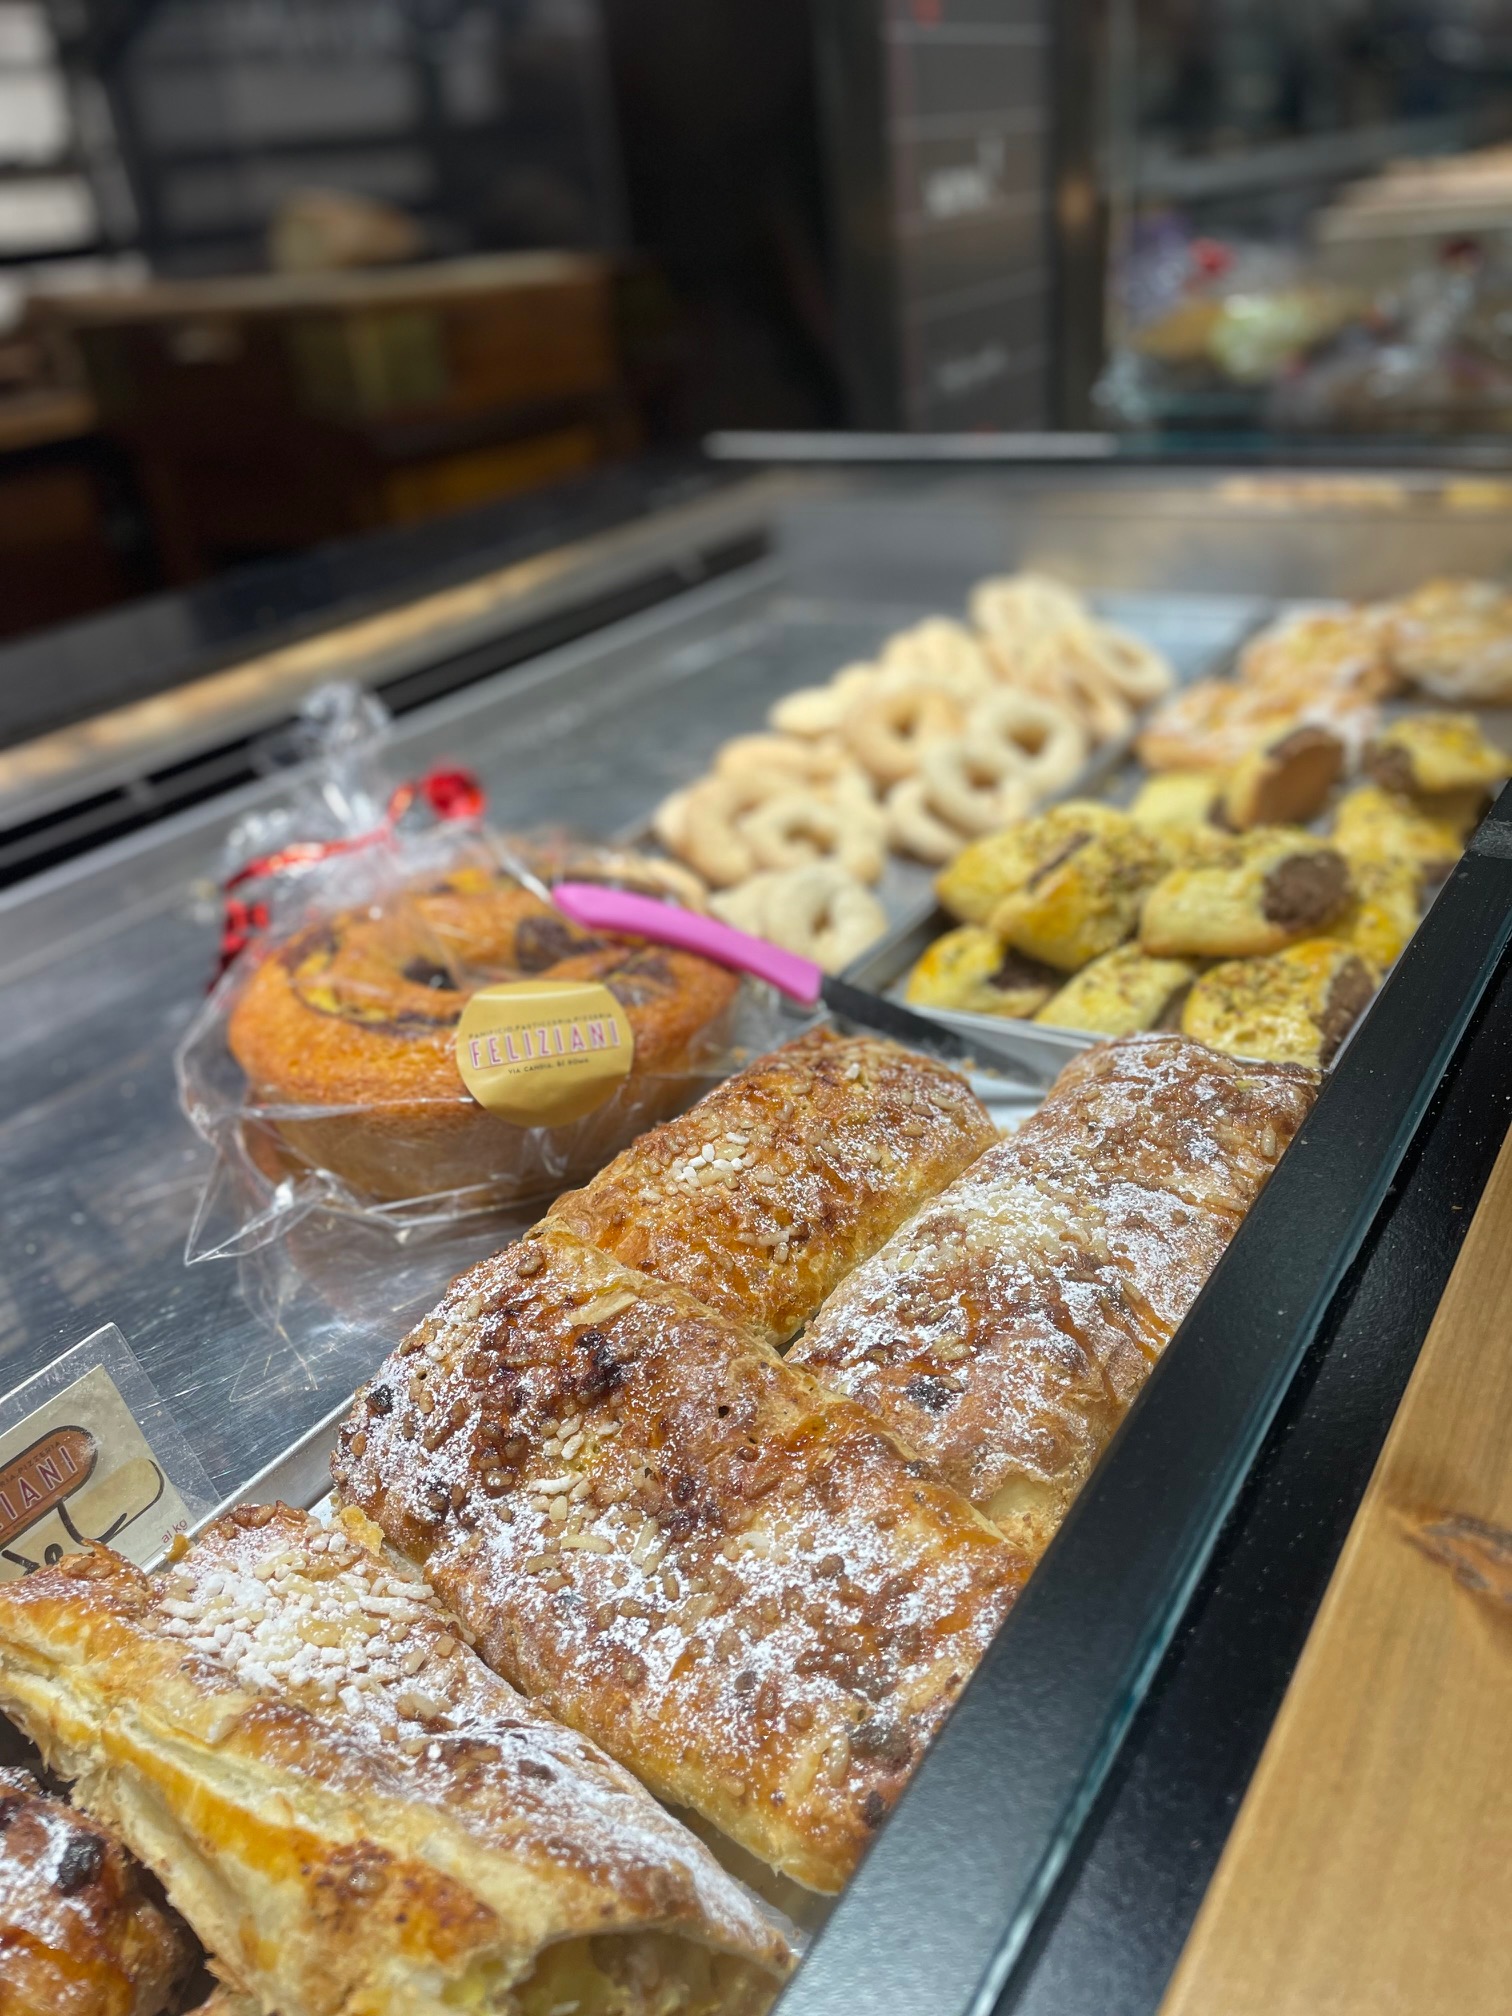 Desayuno italiano en una panadería tradicional cerca de los museos vaticanos